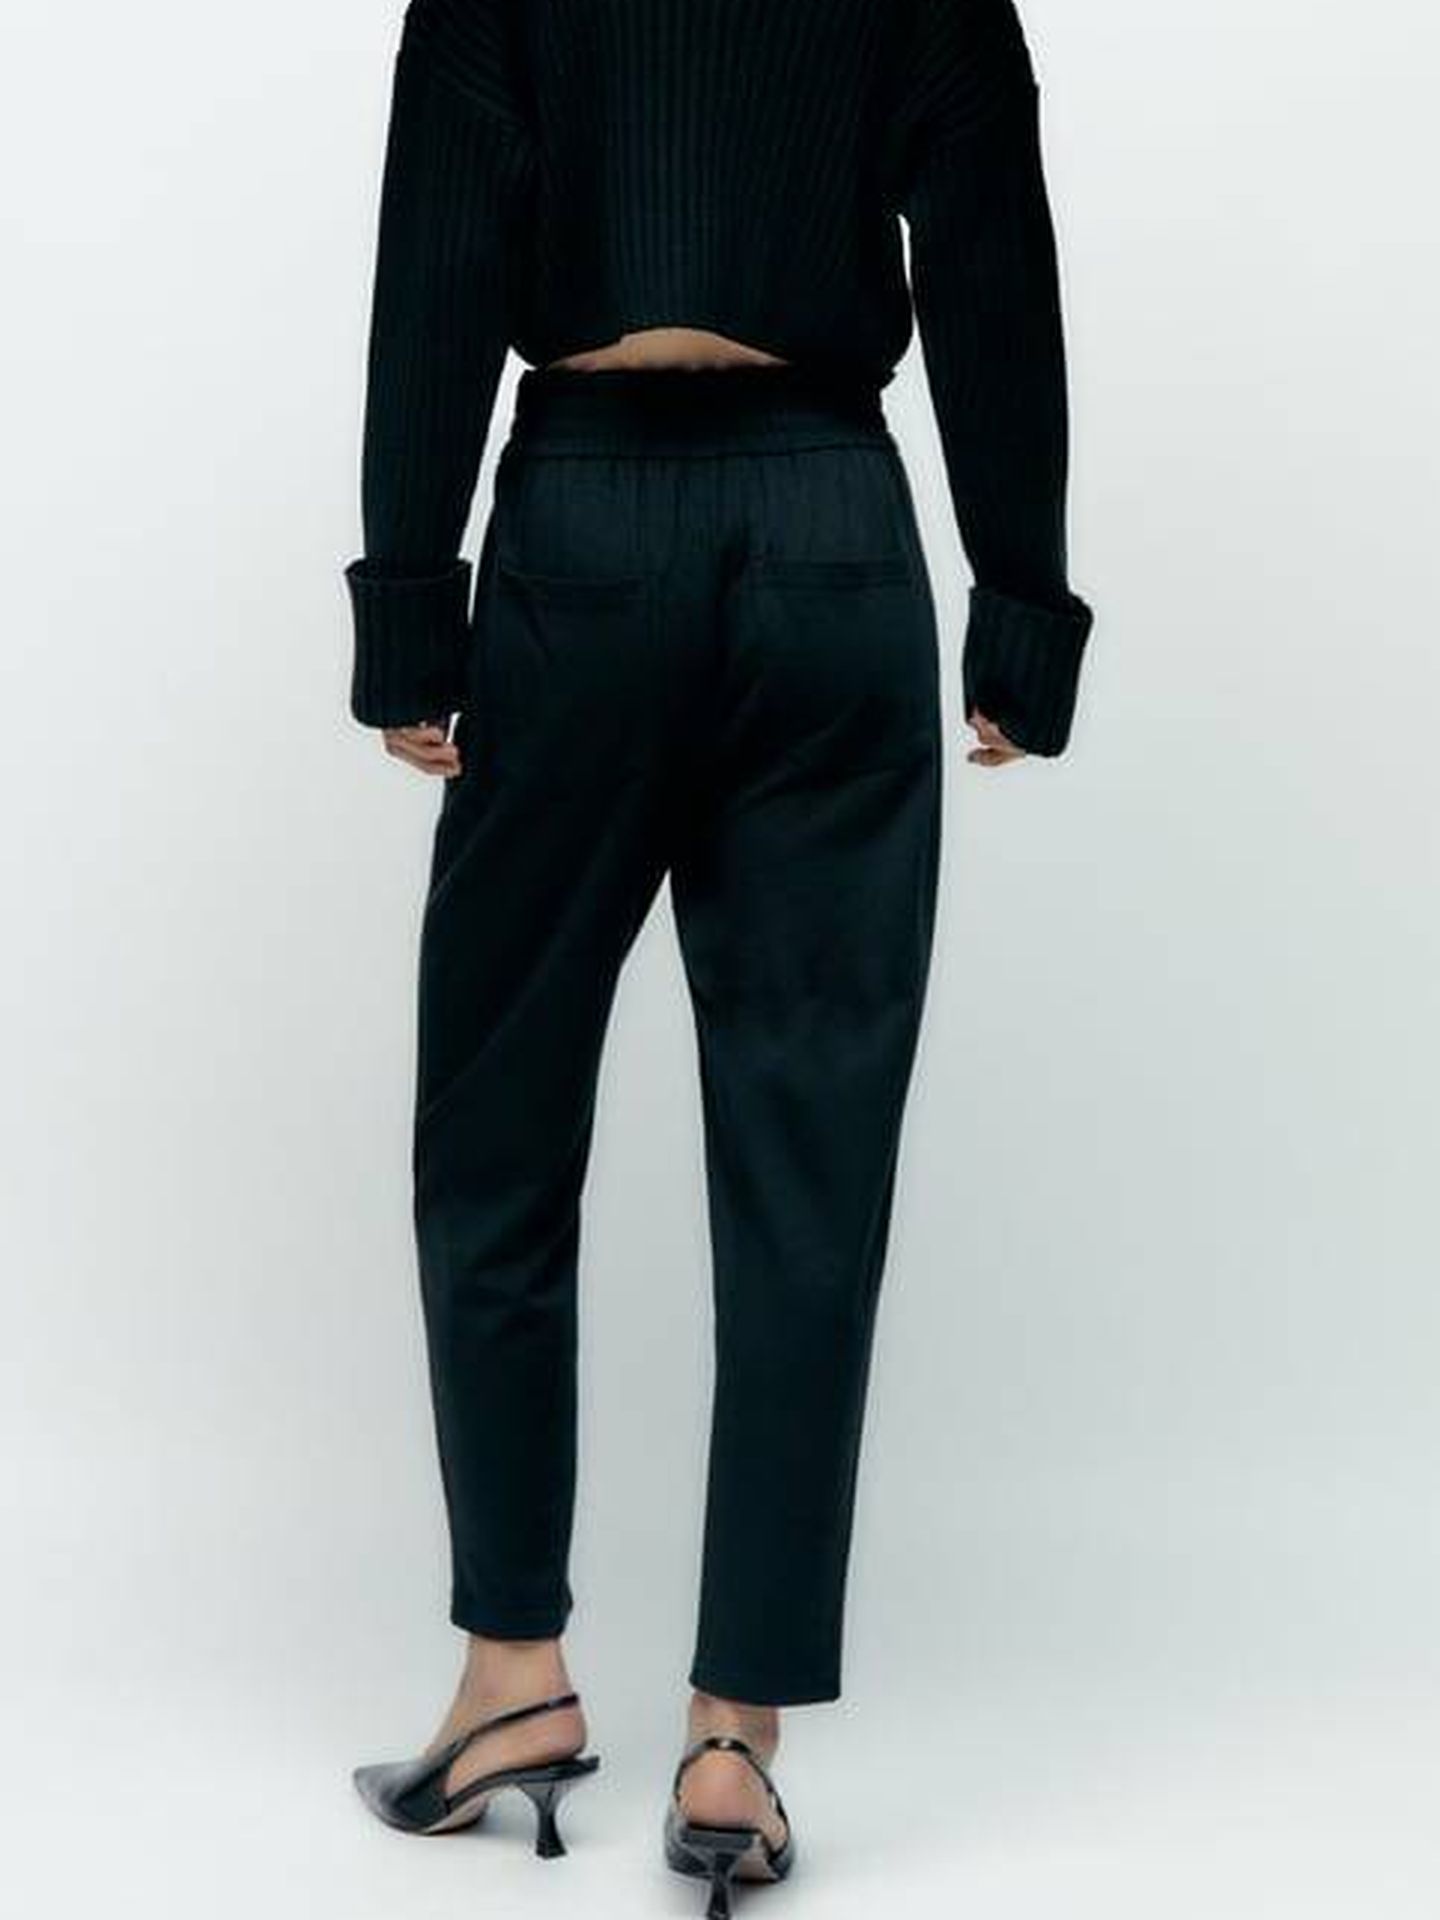 Descubre el nuevo pantalón de Zara, ideal para la oficina. (Cortesía)